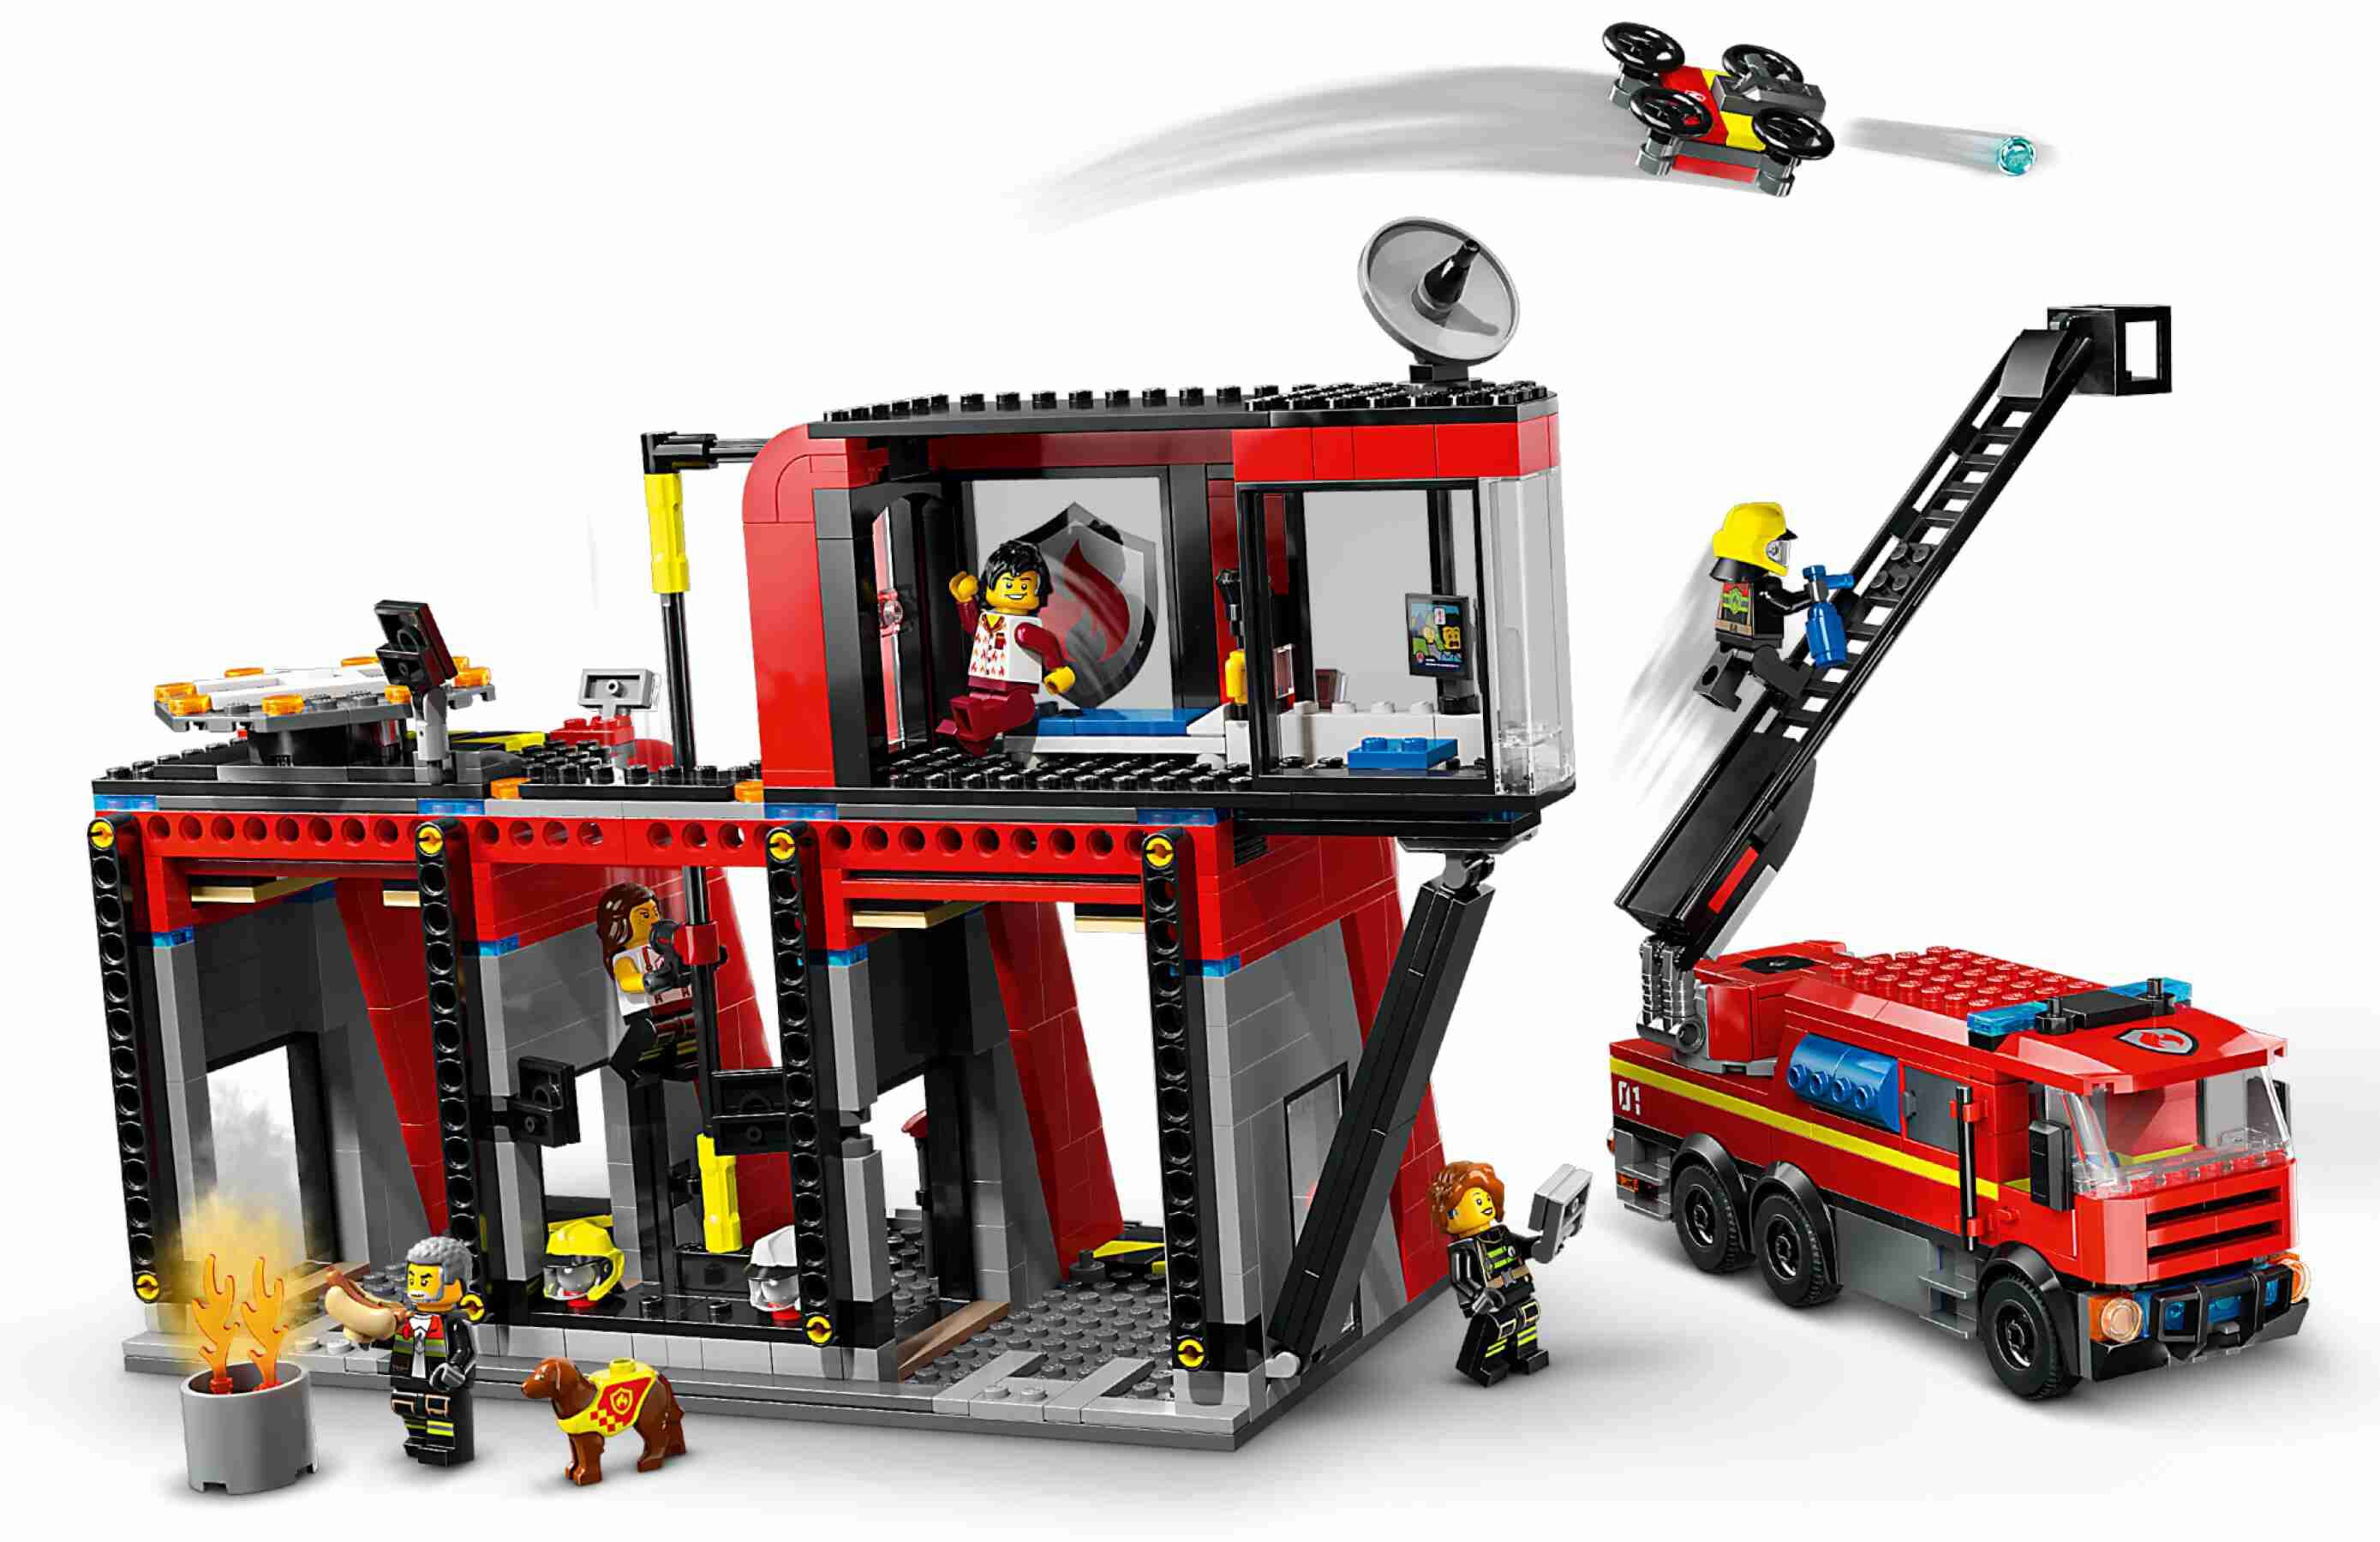 LEGO 60414 City Feuerwehrstation mit Drehleiterfahrzeug, 5 Feuerwehrmänner